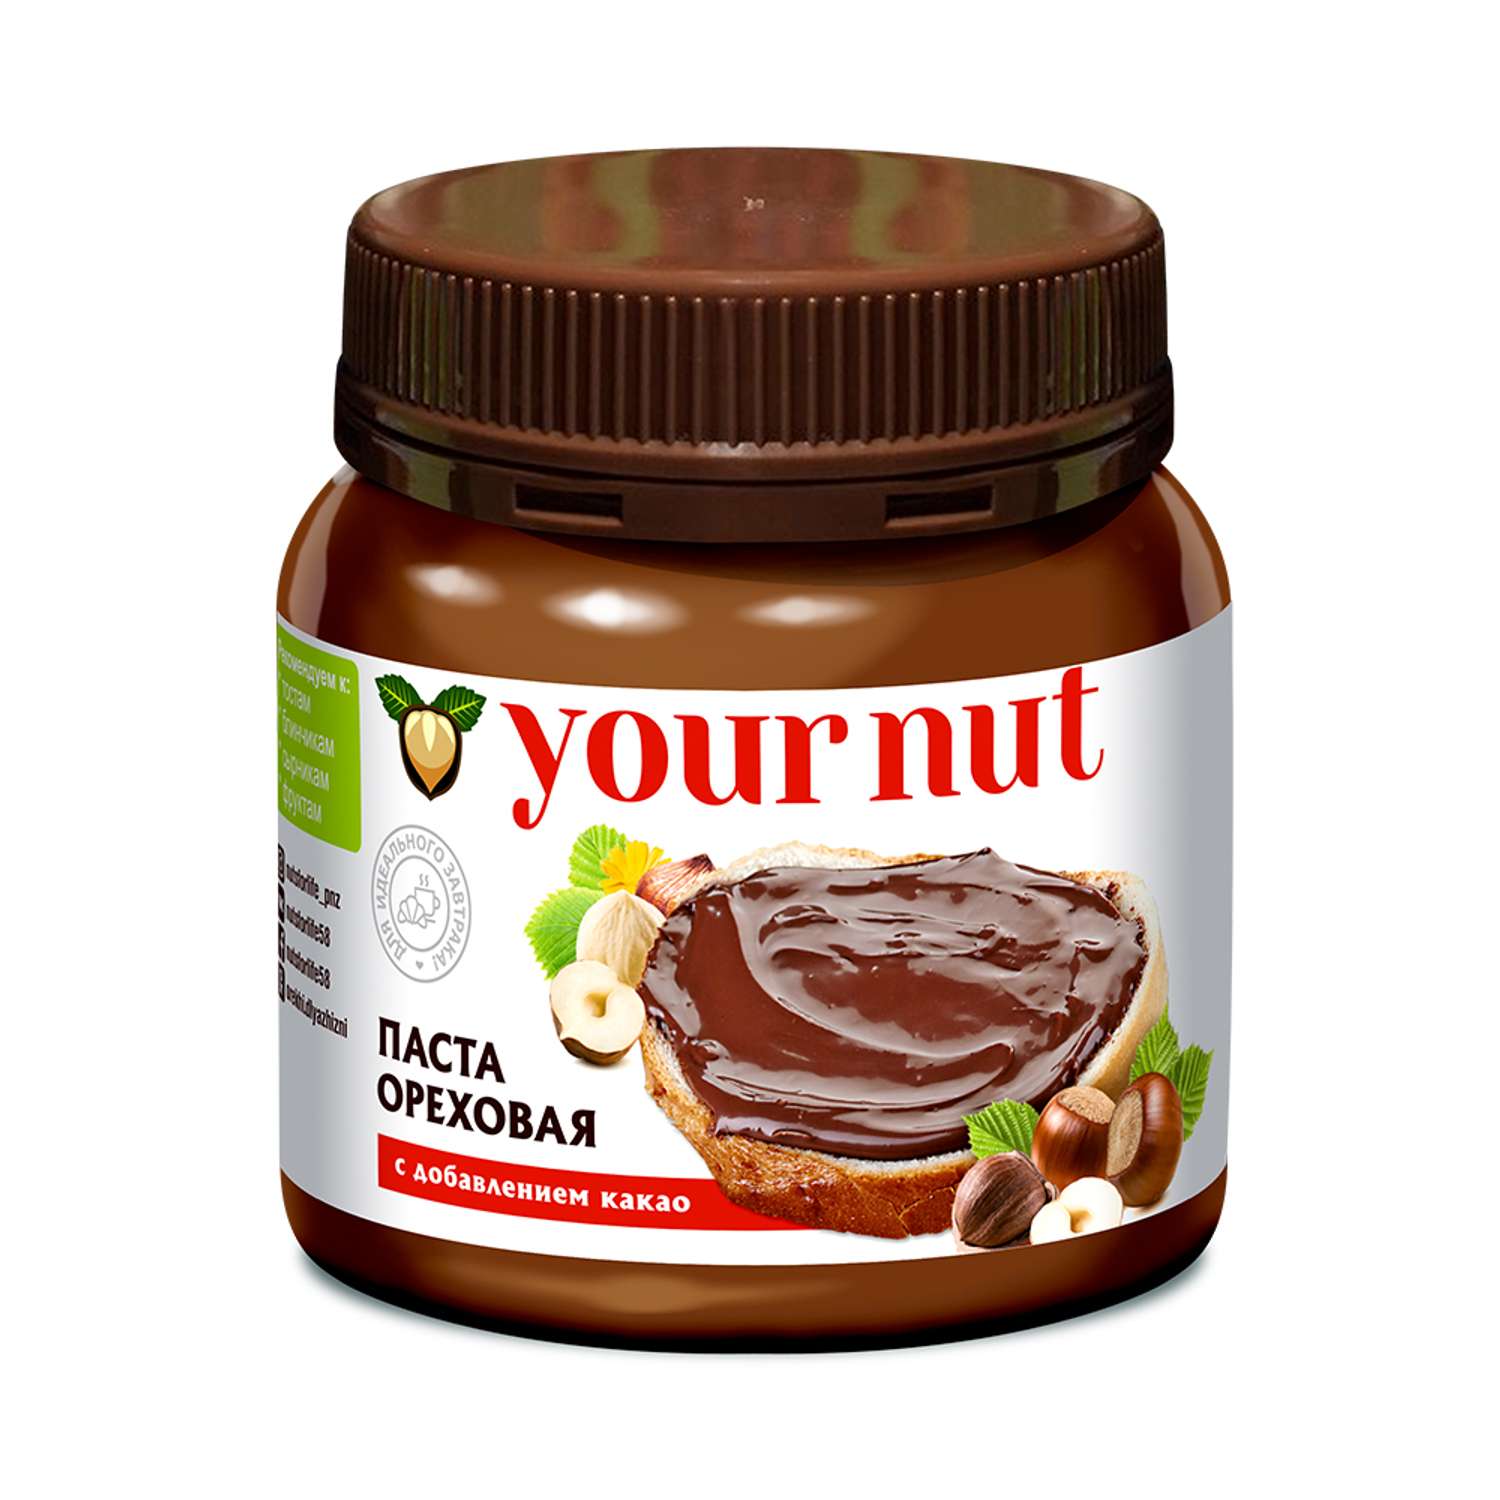 Паста ореховая your nut с какао 250 г - фото 1